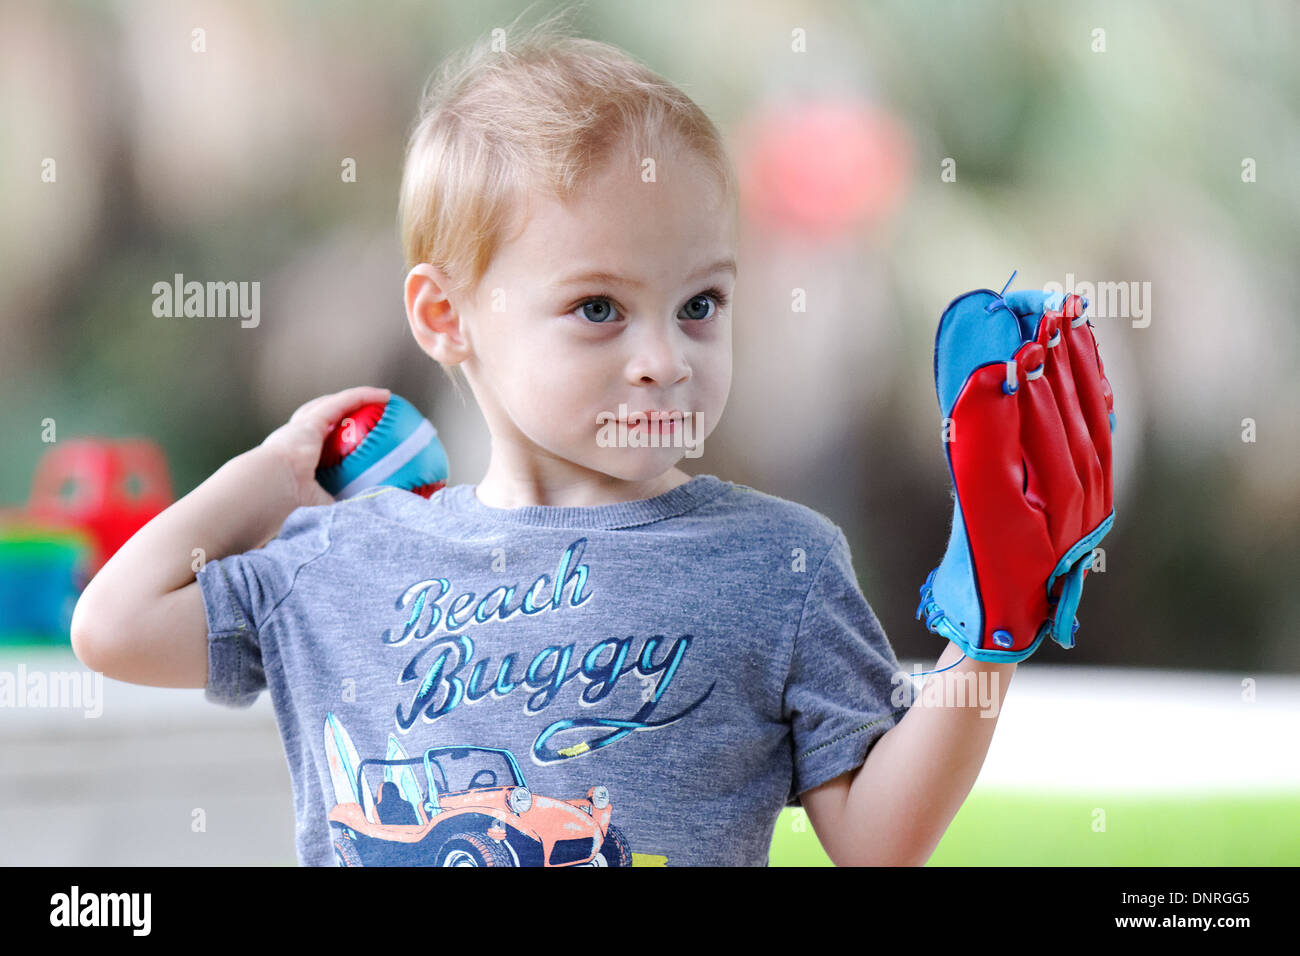 Jeune garçon jouant au baseball Banque D'Images